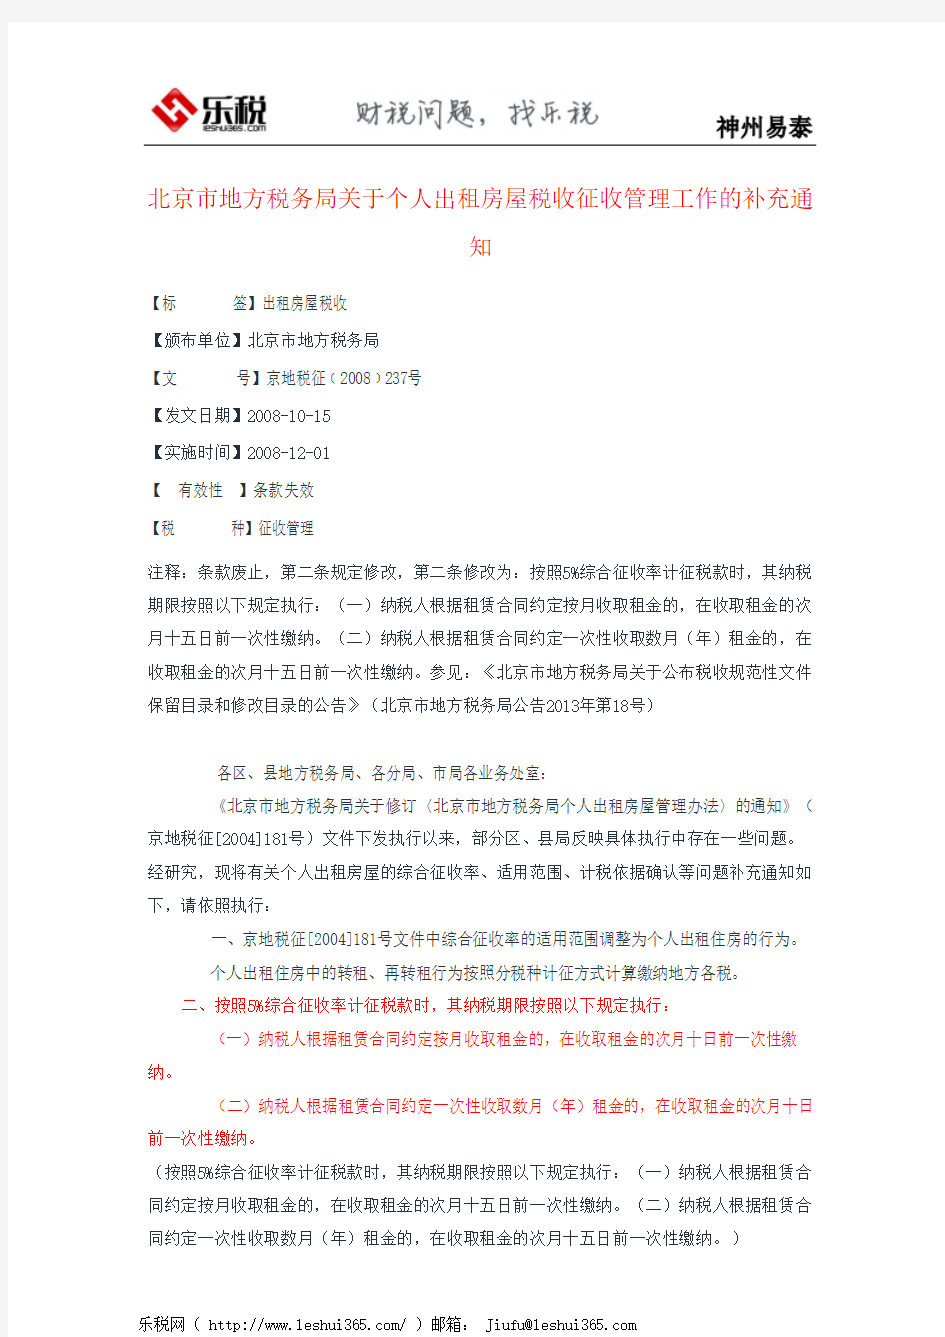 北京市地方税务局关于个人出租房屋税收征收管理工作的补充通知